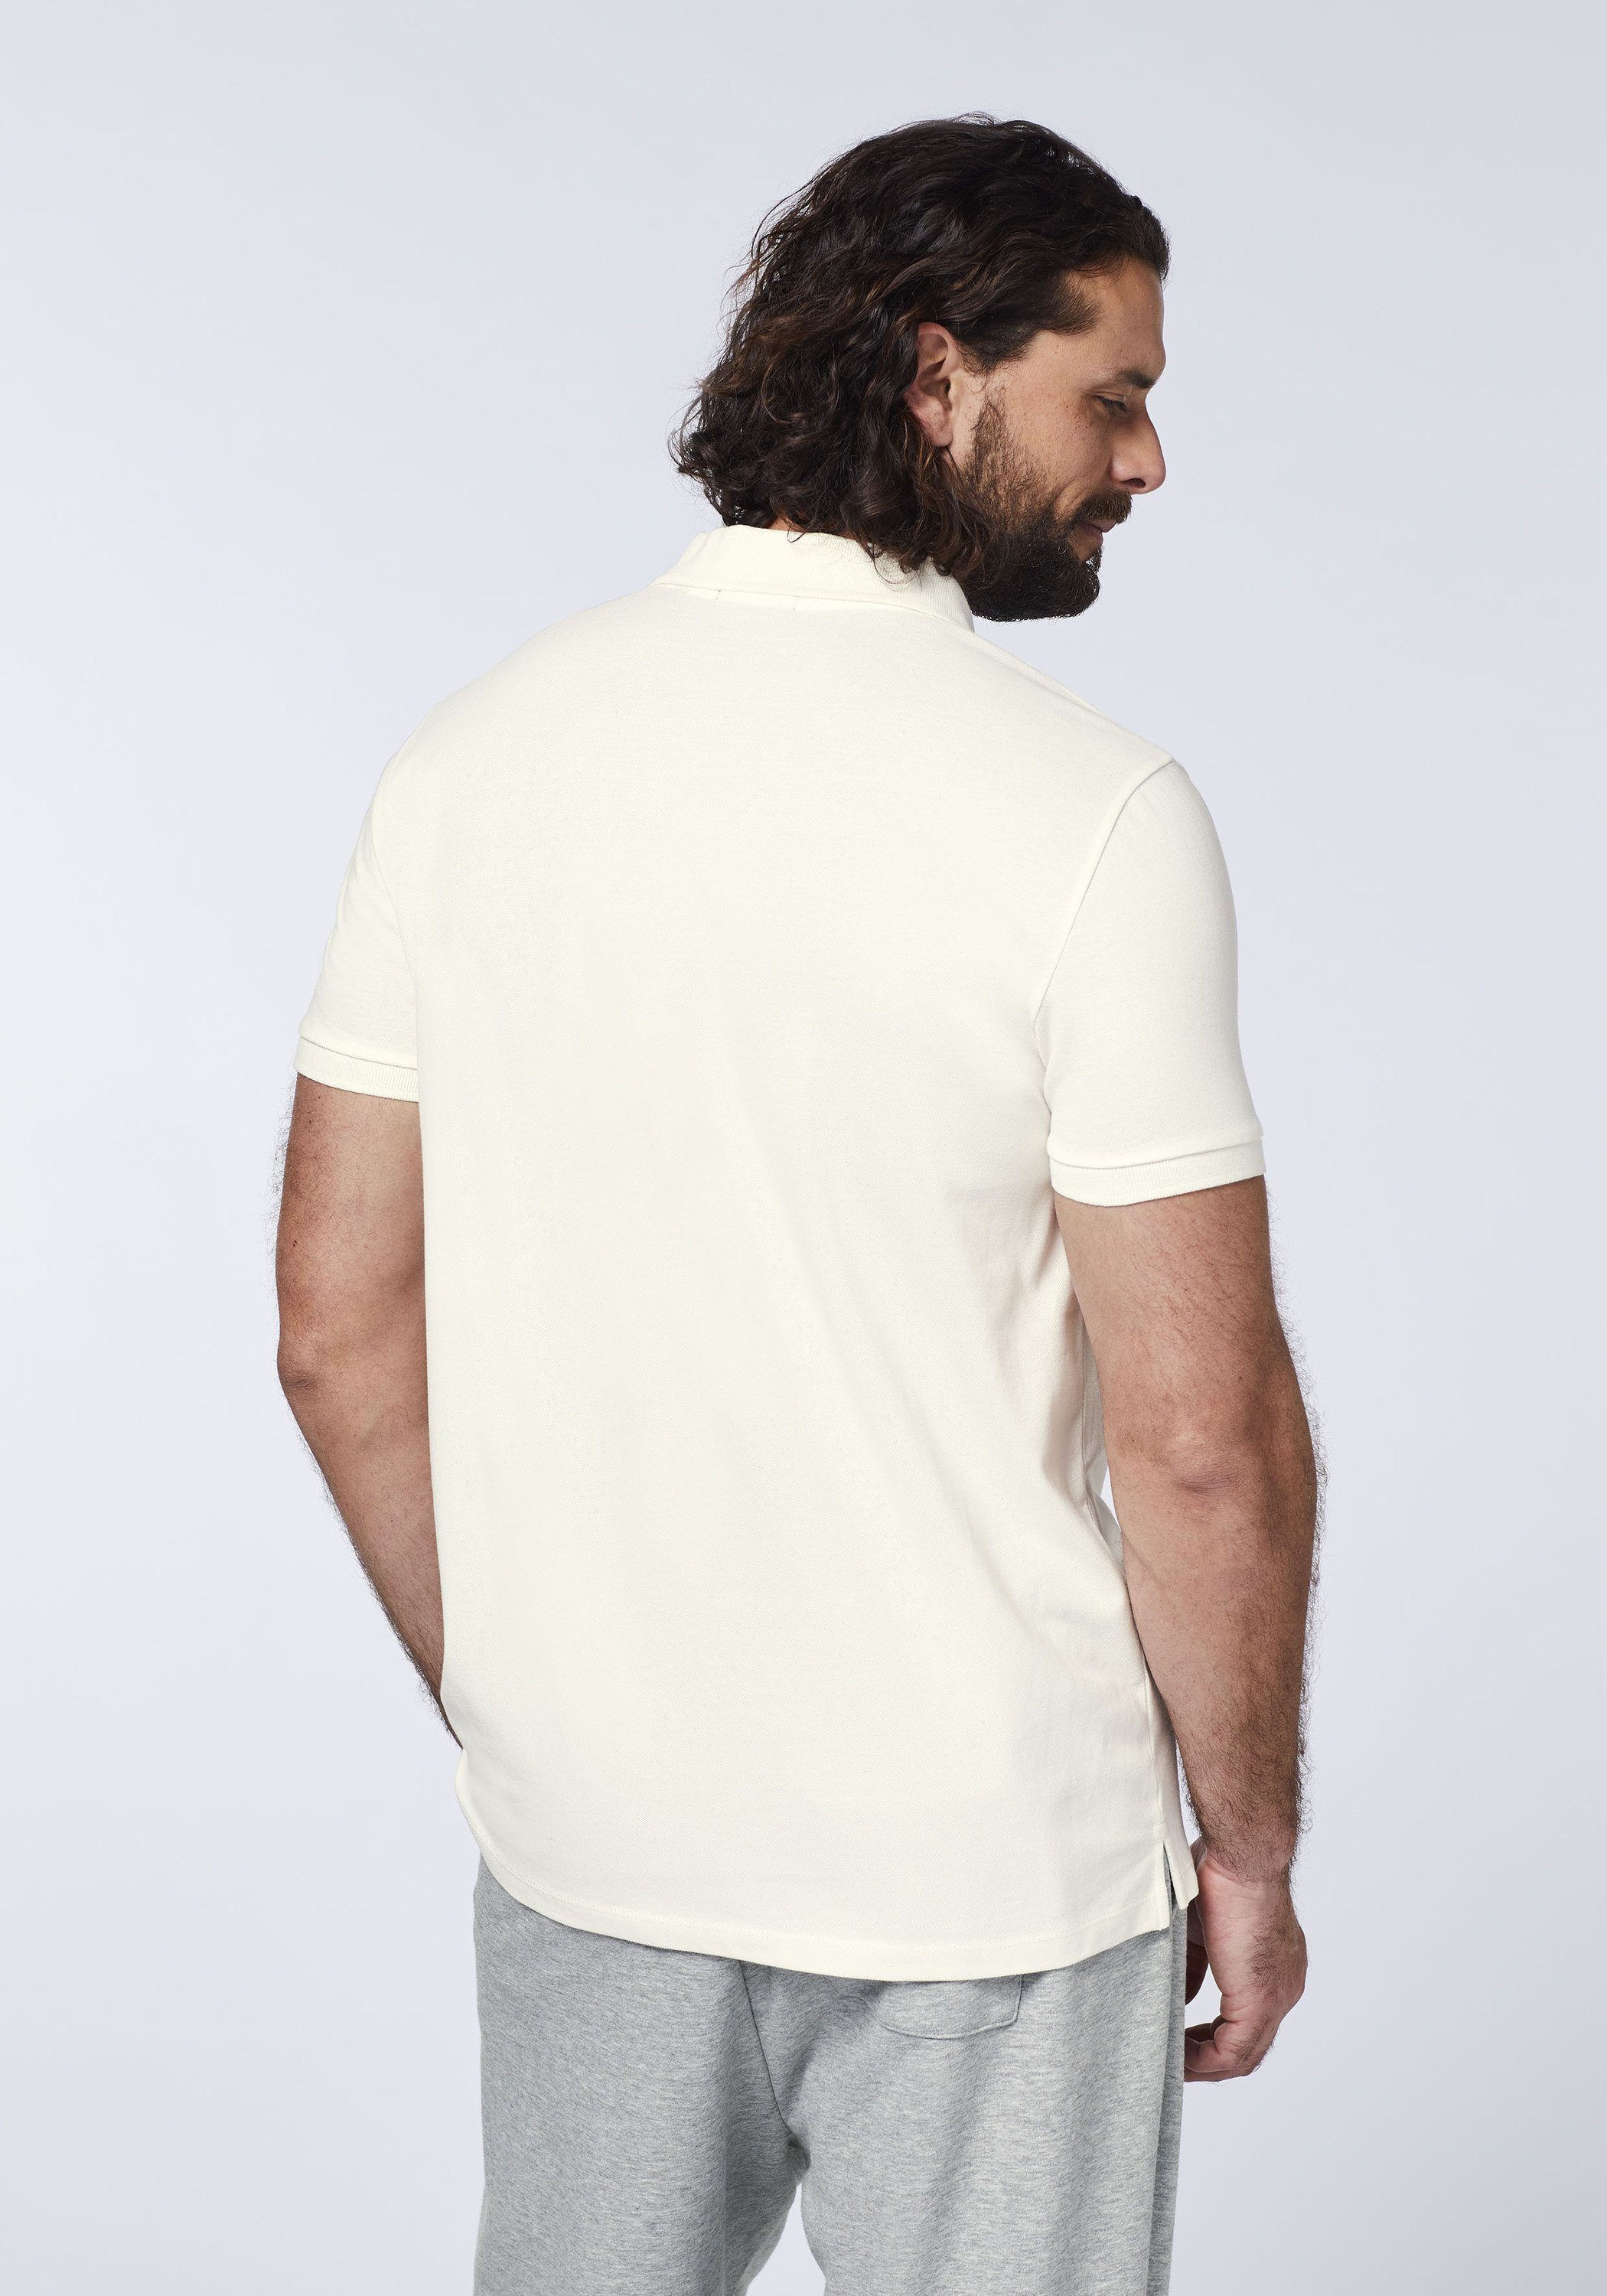 11-4202 in Two-Tone-Optik Piqué 1 White Poloshirt Star Poloshirt Chiemsee aus